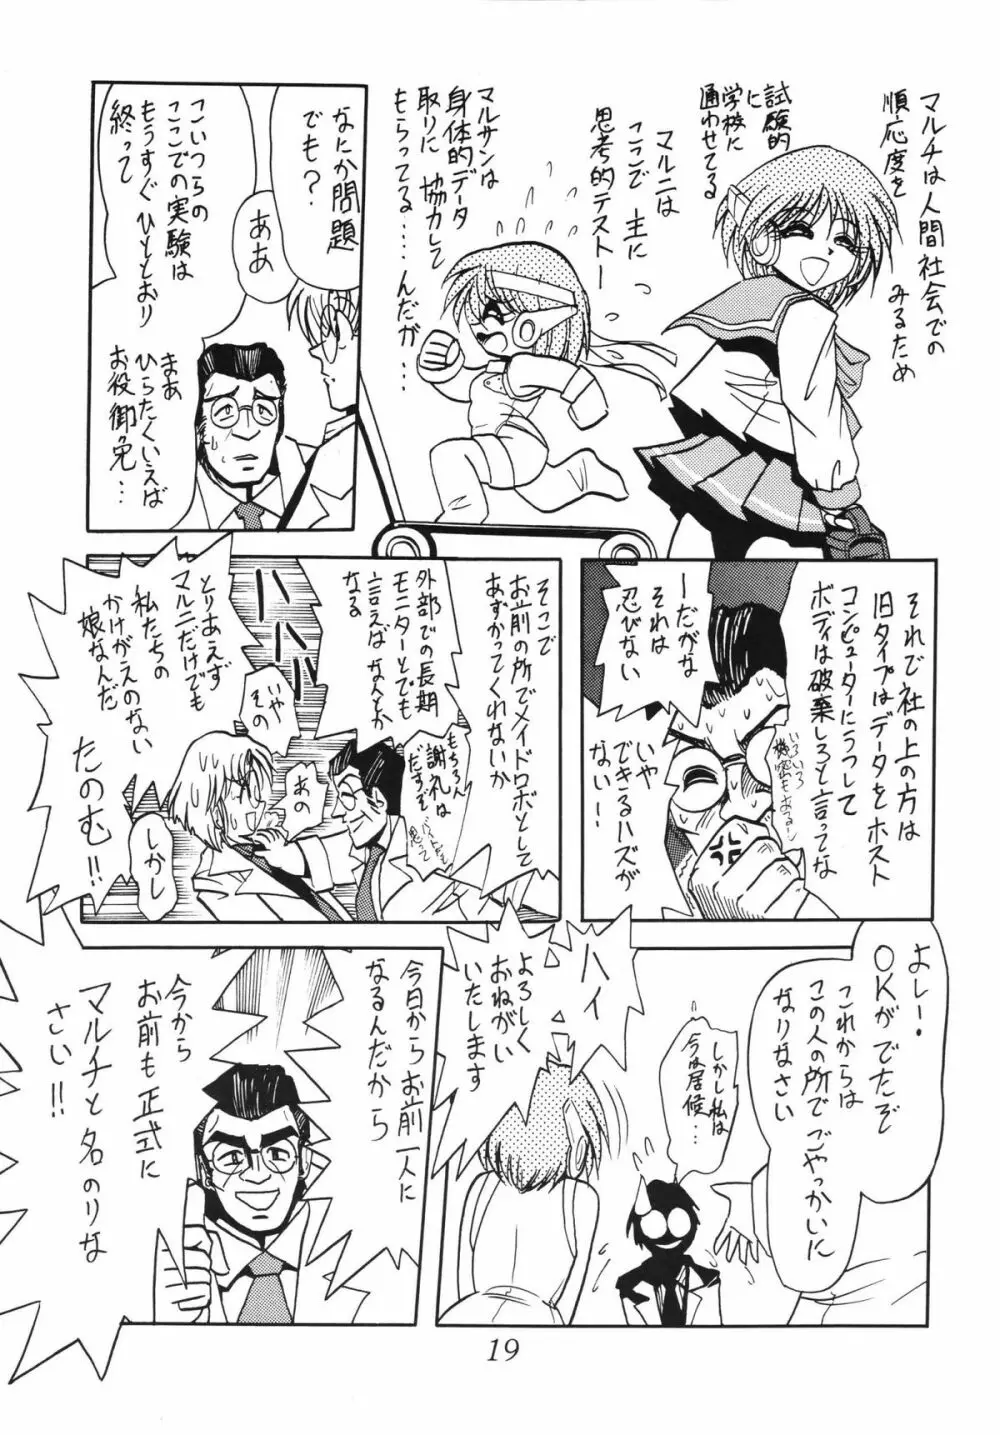 サイレント・サターン SS vol.5 - page19